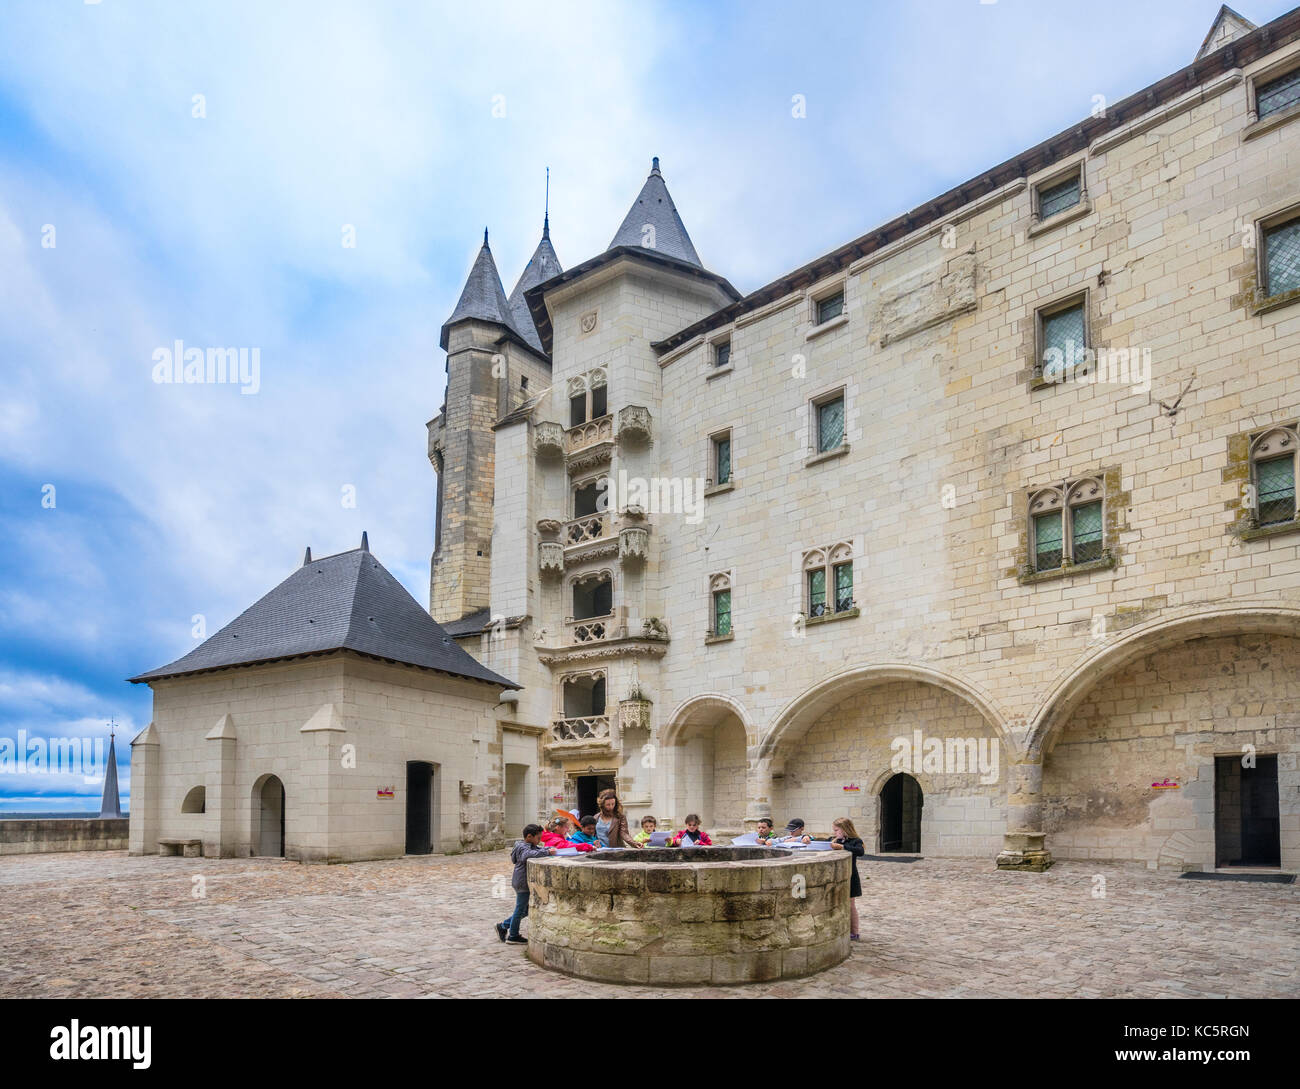 France, Maine-et-Loire department, Pays de la Loire, well in the court yard of Château de Saumur Stock Photo